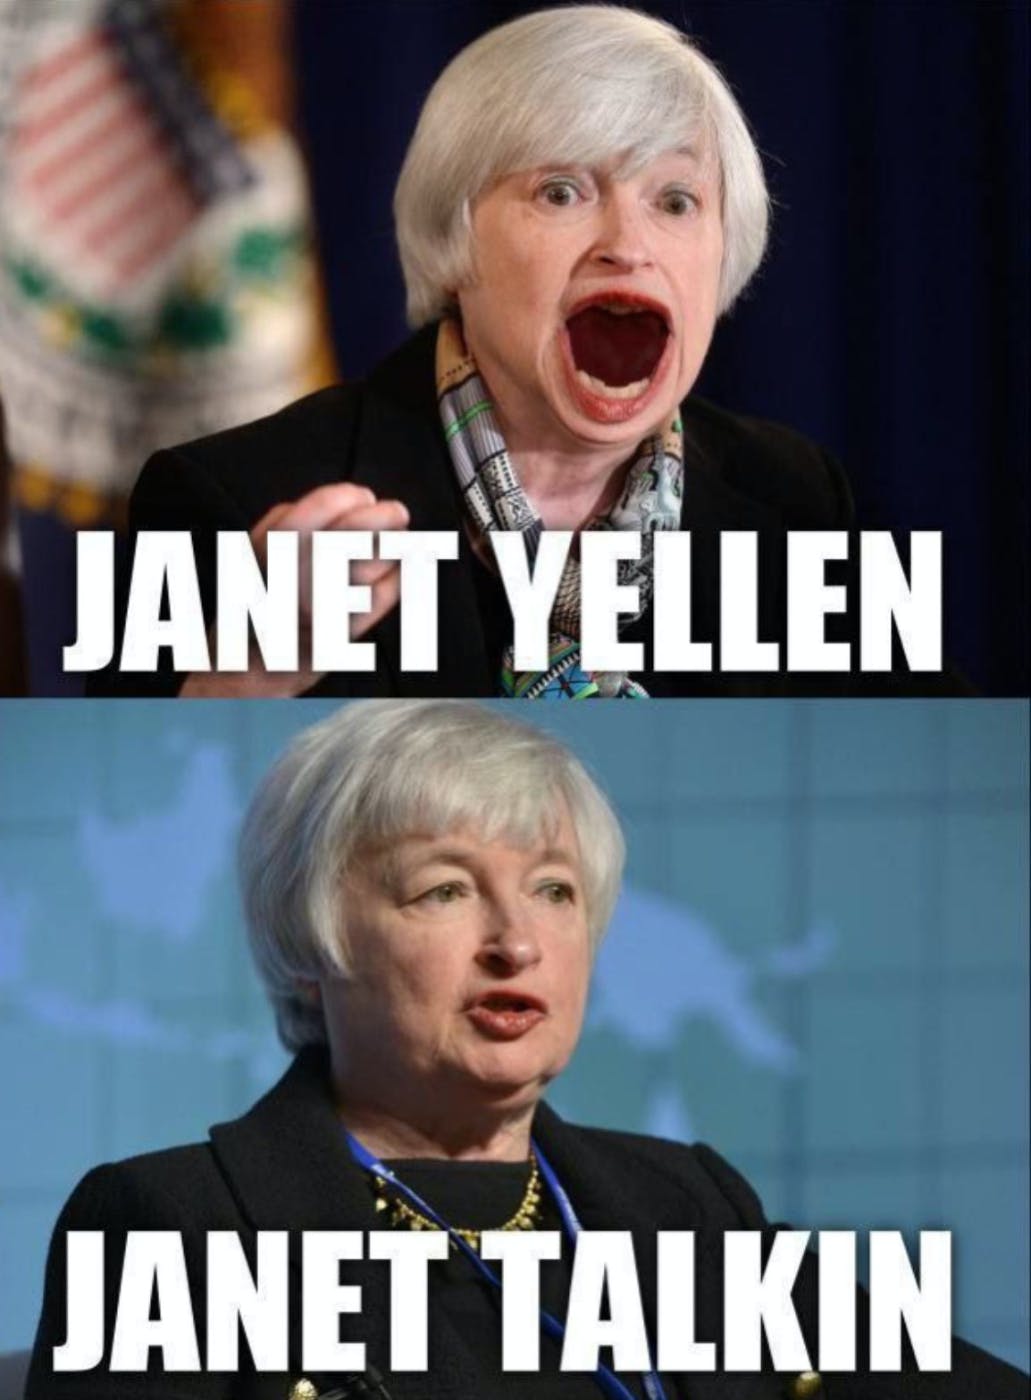 Yellen or Talkin'?